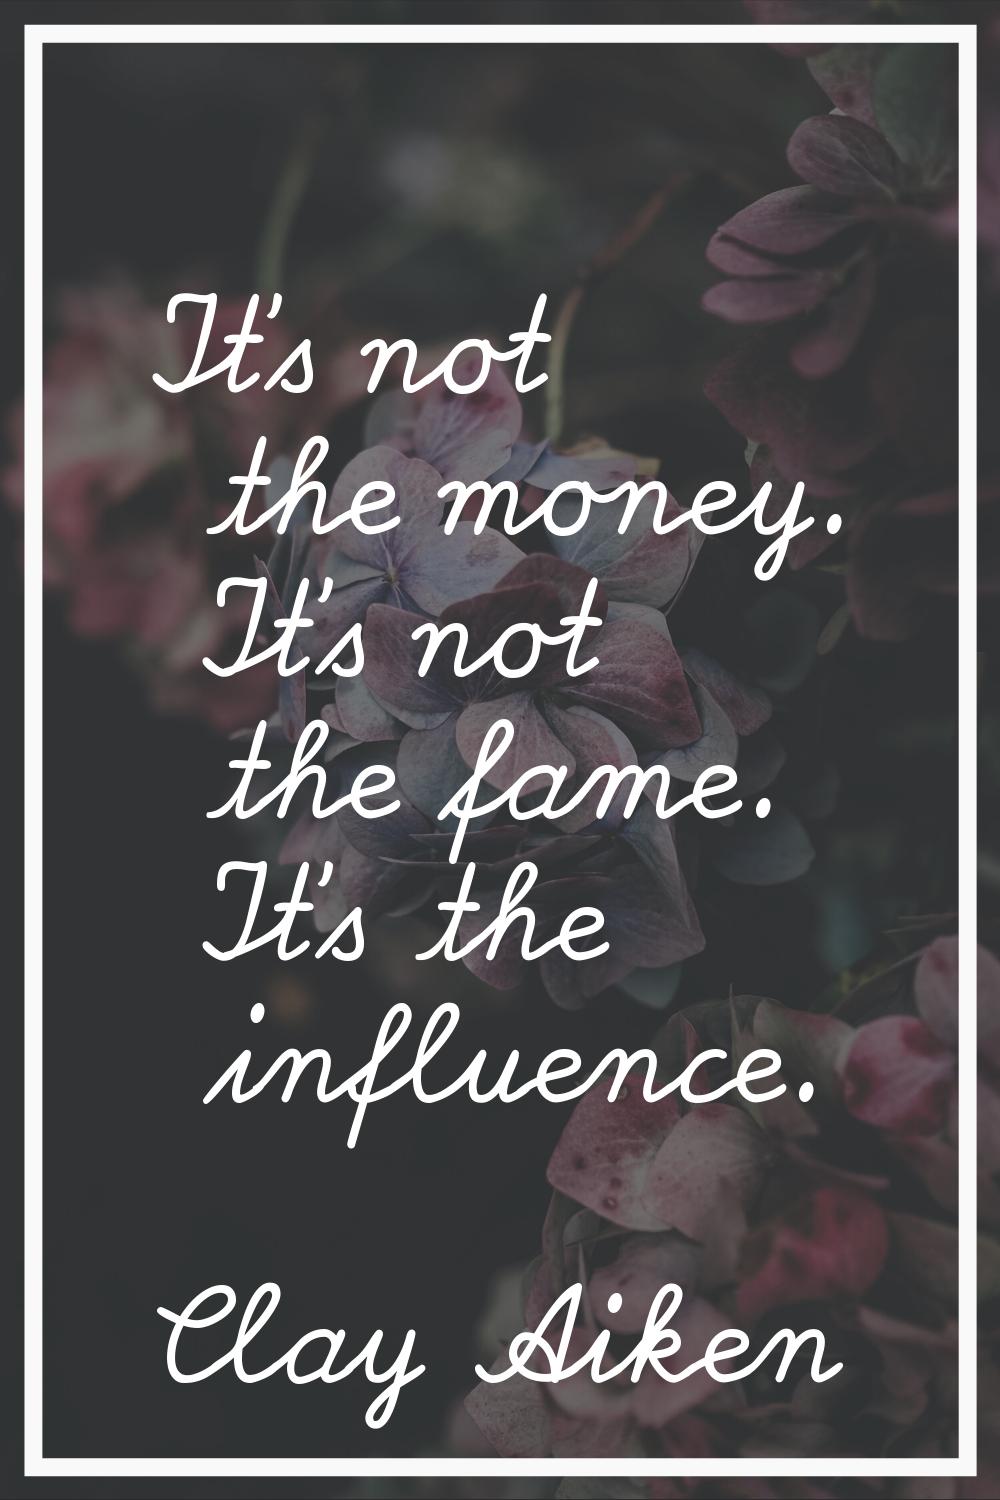 It's not the money. It's not the fame. It's the influence.